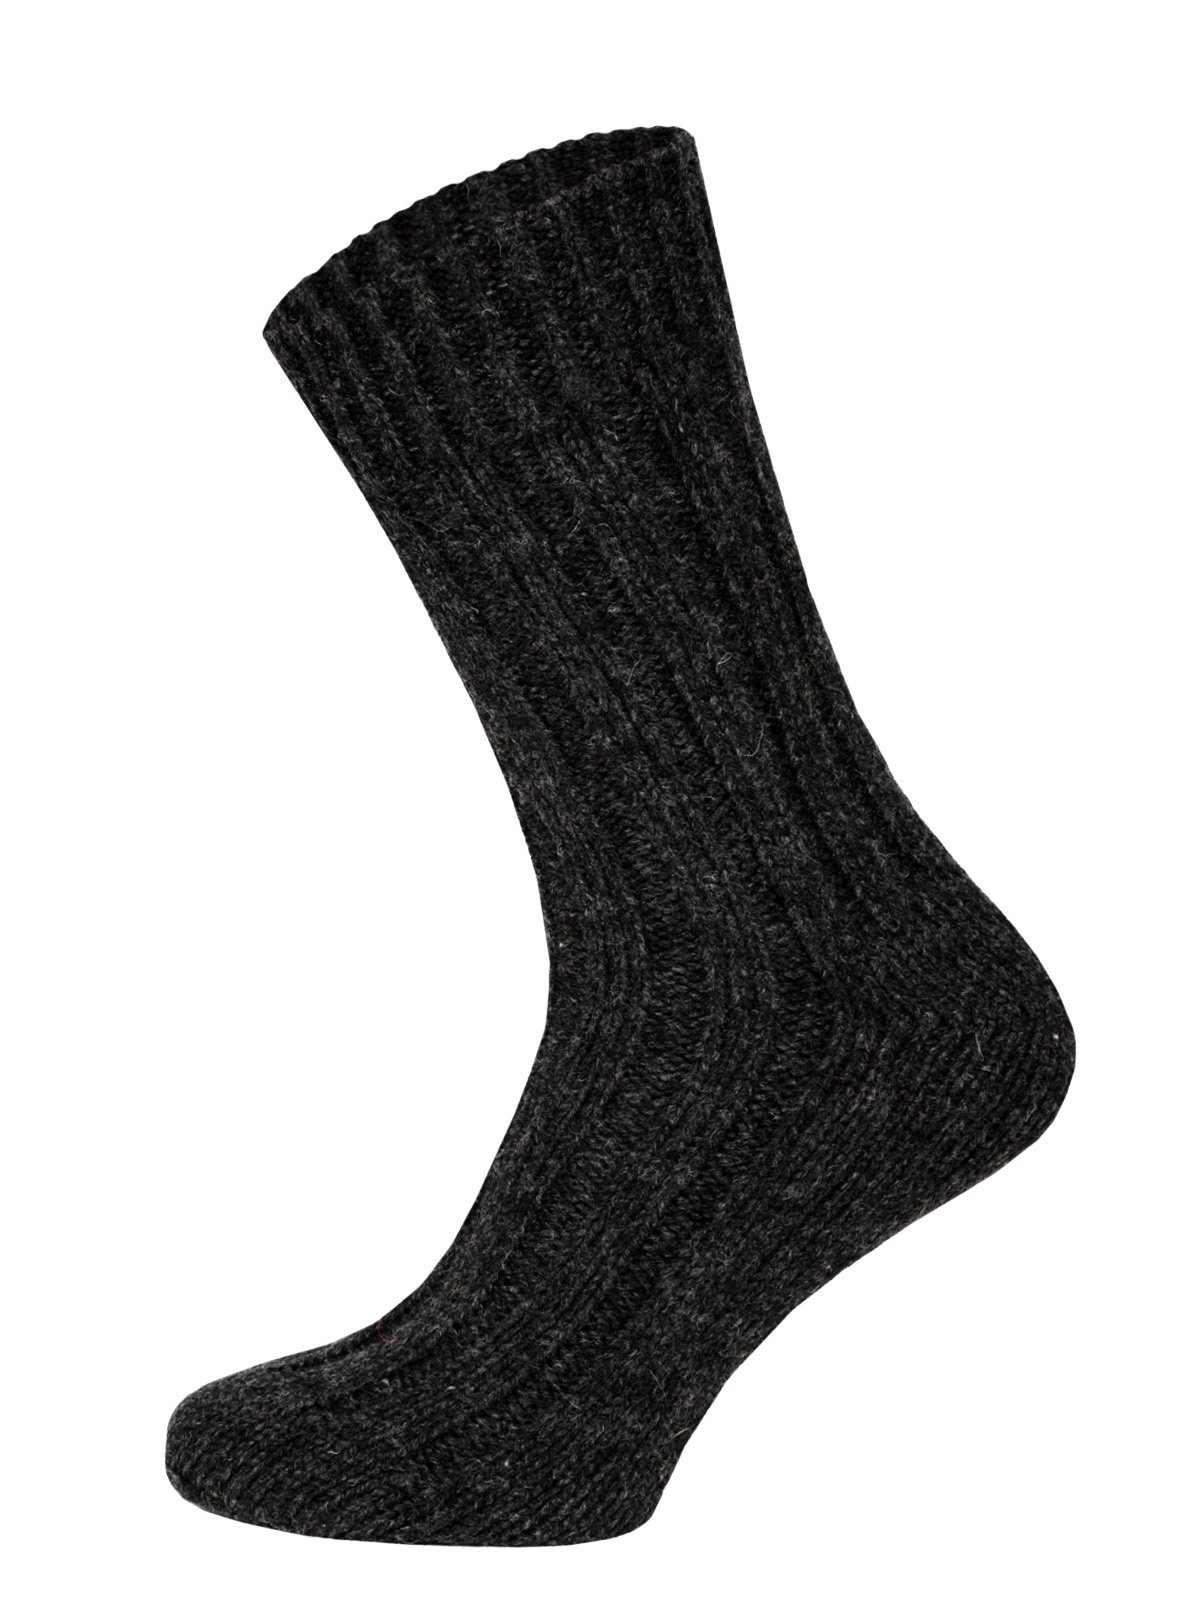 HomeOfSocks Socken Wollsocken aus 100% Wolle (Schurwolle) 2er Pack Dicke und warme Wollsocken mit 100% Wollanteil Anthrazit